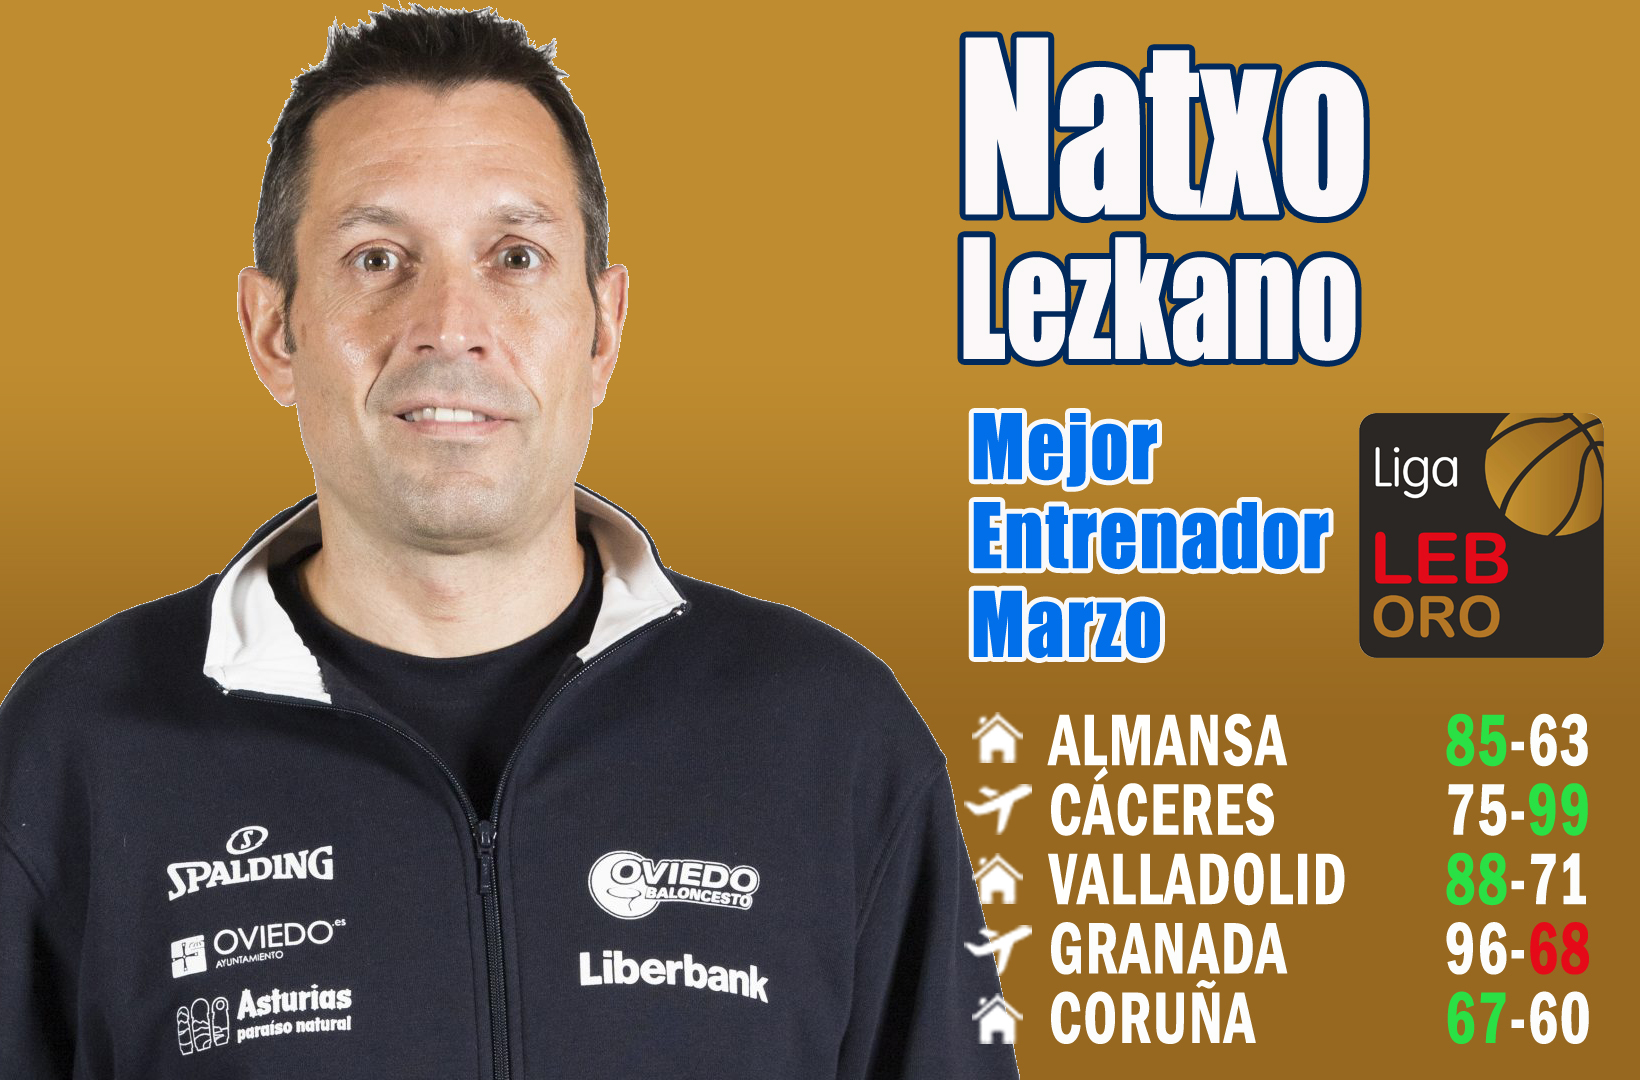 Natxo Lezkano Mejor Entrenador del Mes de Marzo-Trofeo AEEB de la LEB Oro